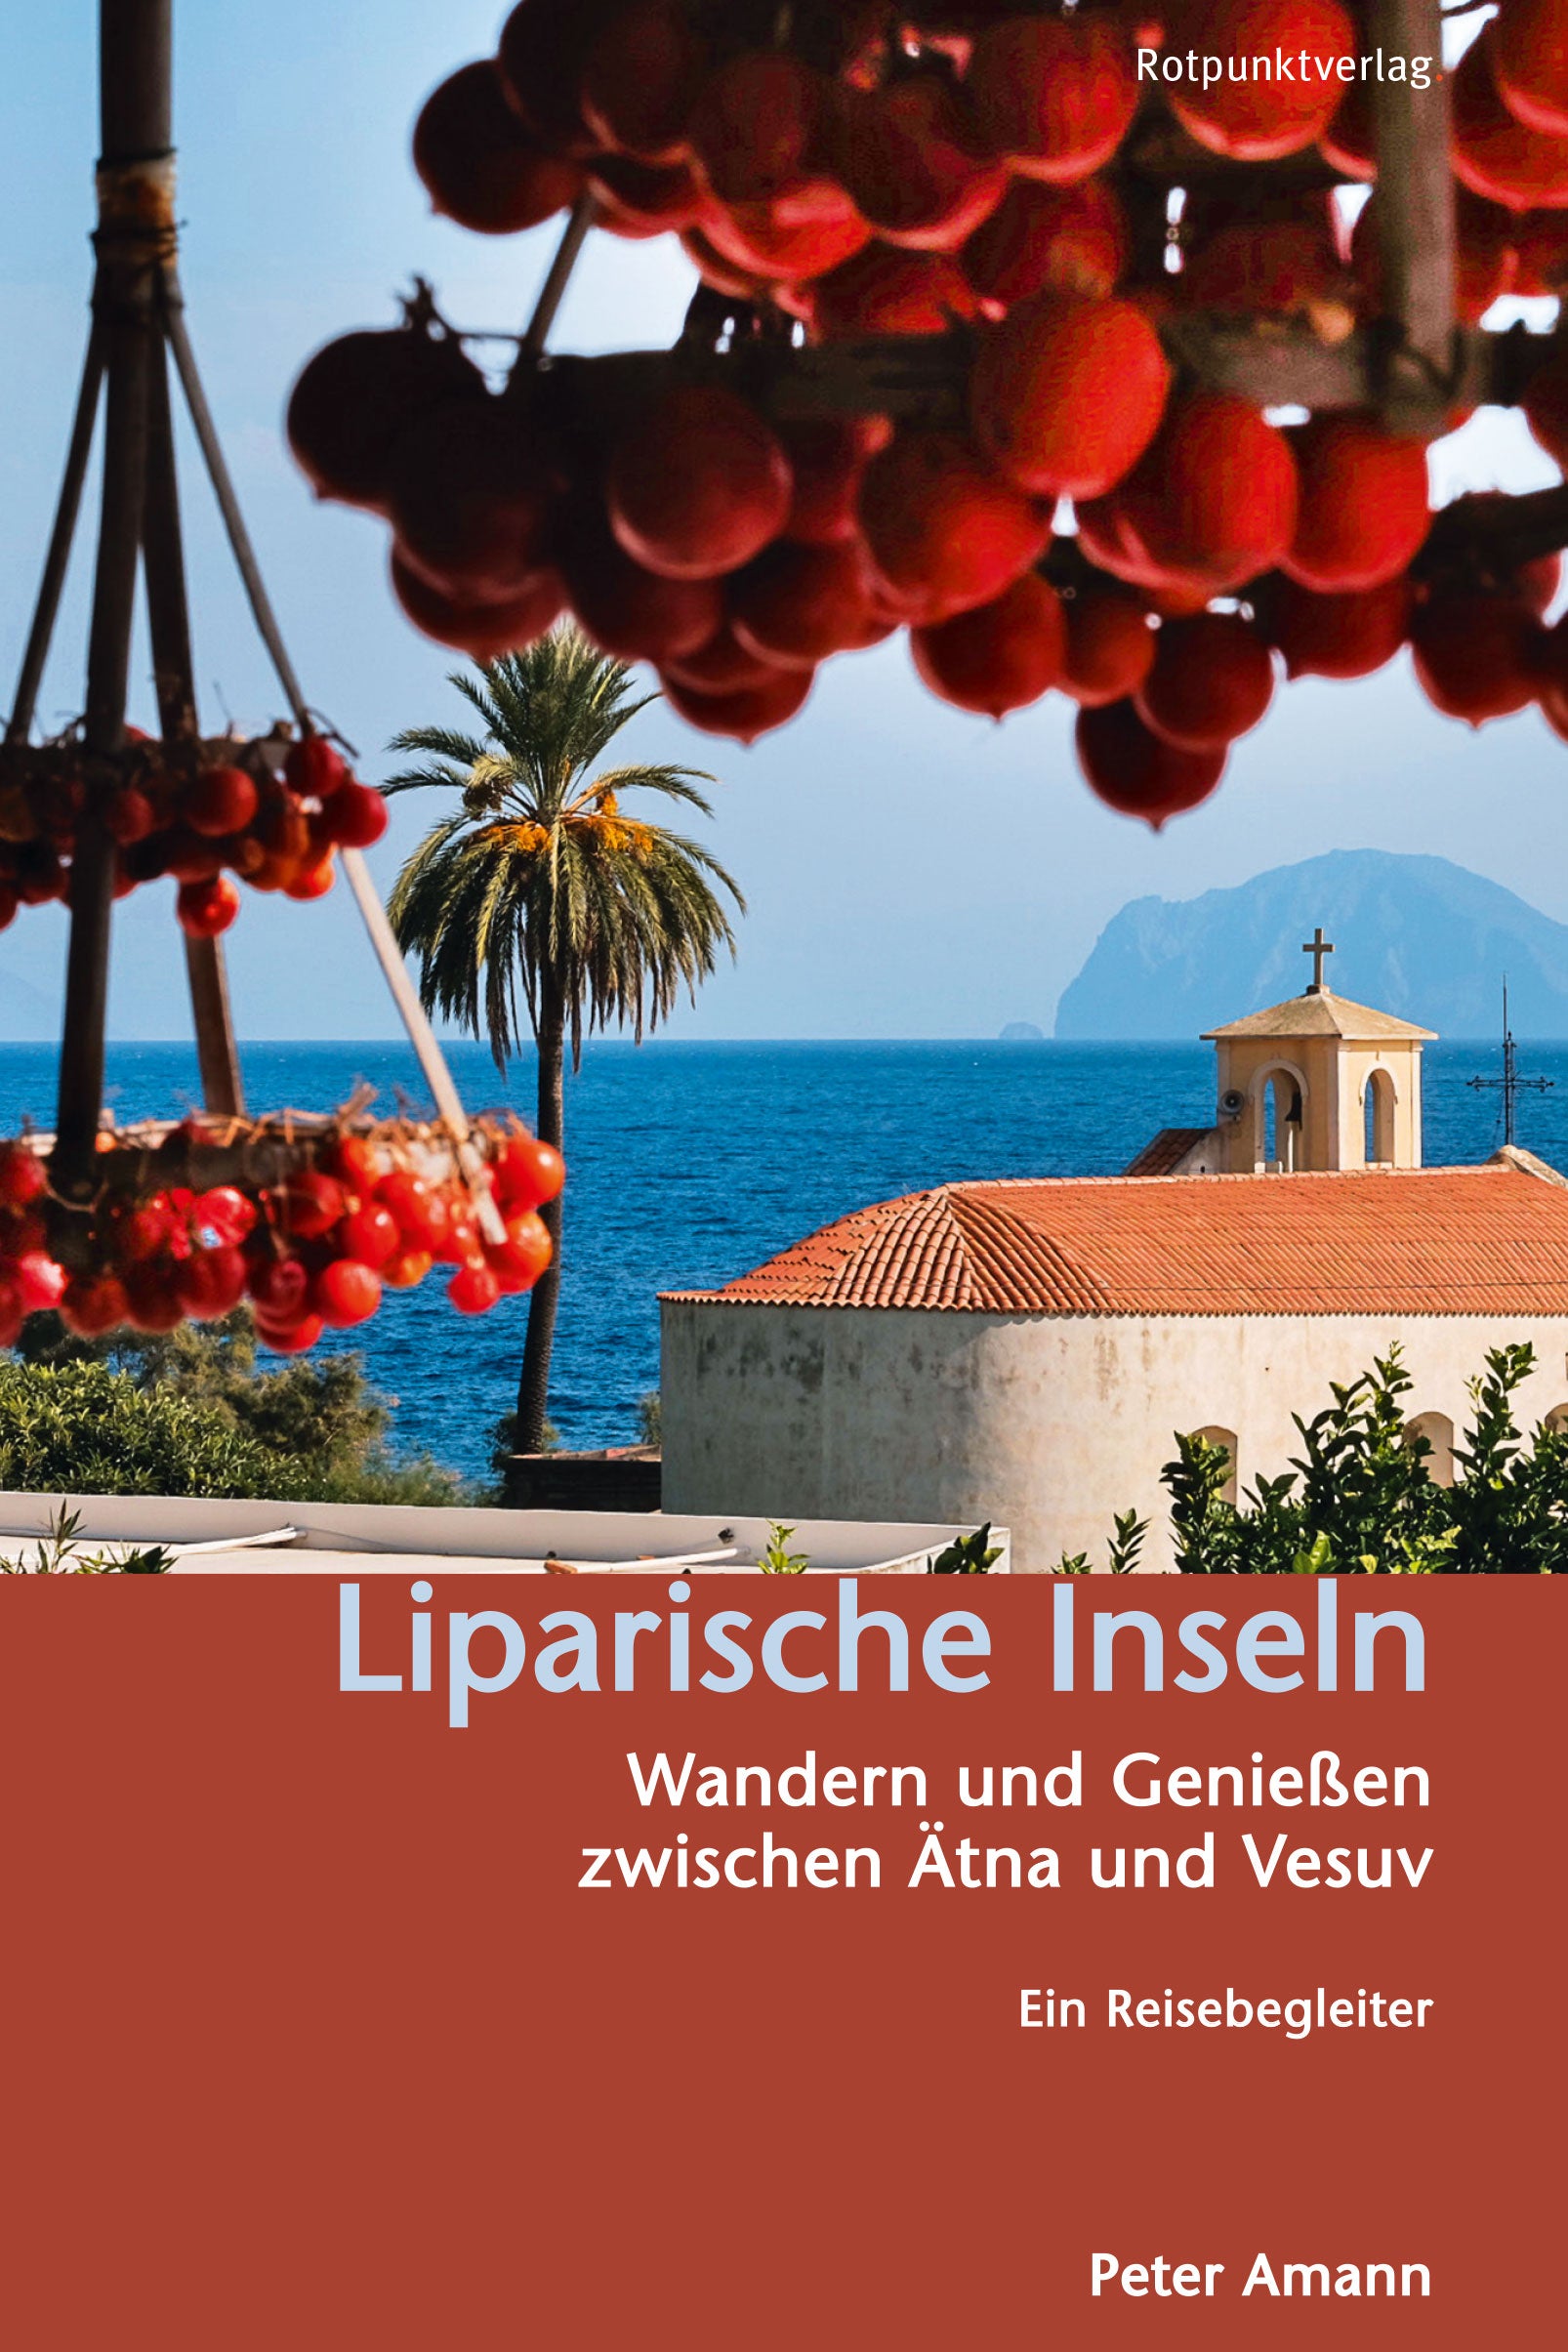 Travel guide Liparische Inseln - Wandern und Genießen between Ätna and Vesuv. A travel guide